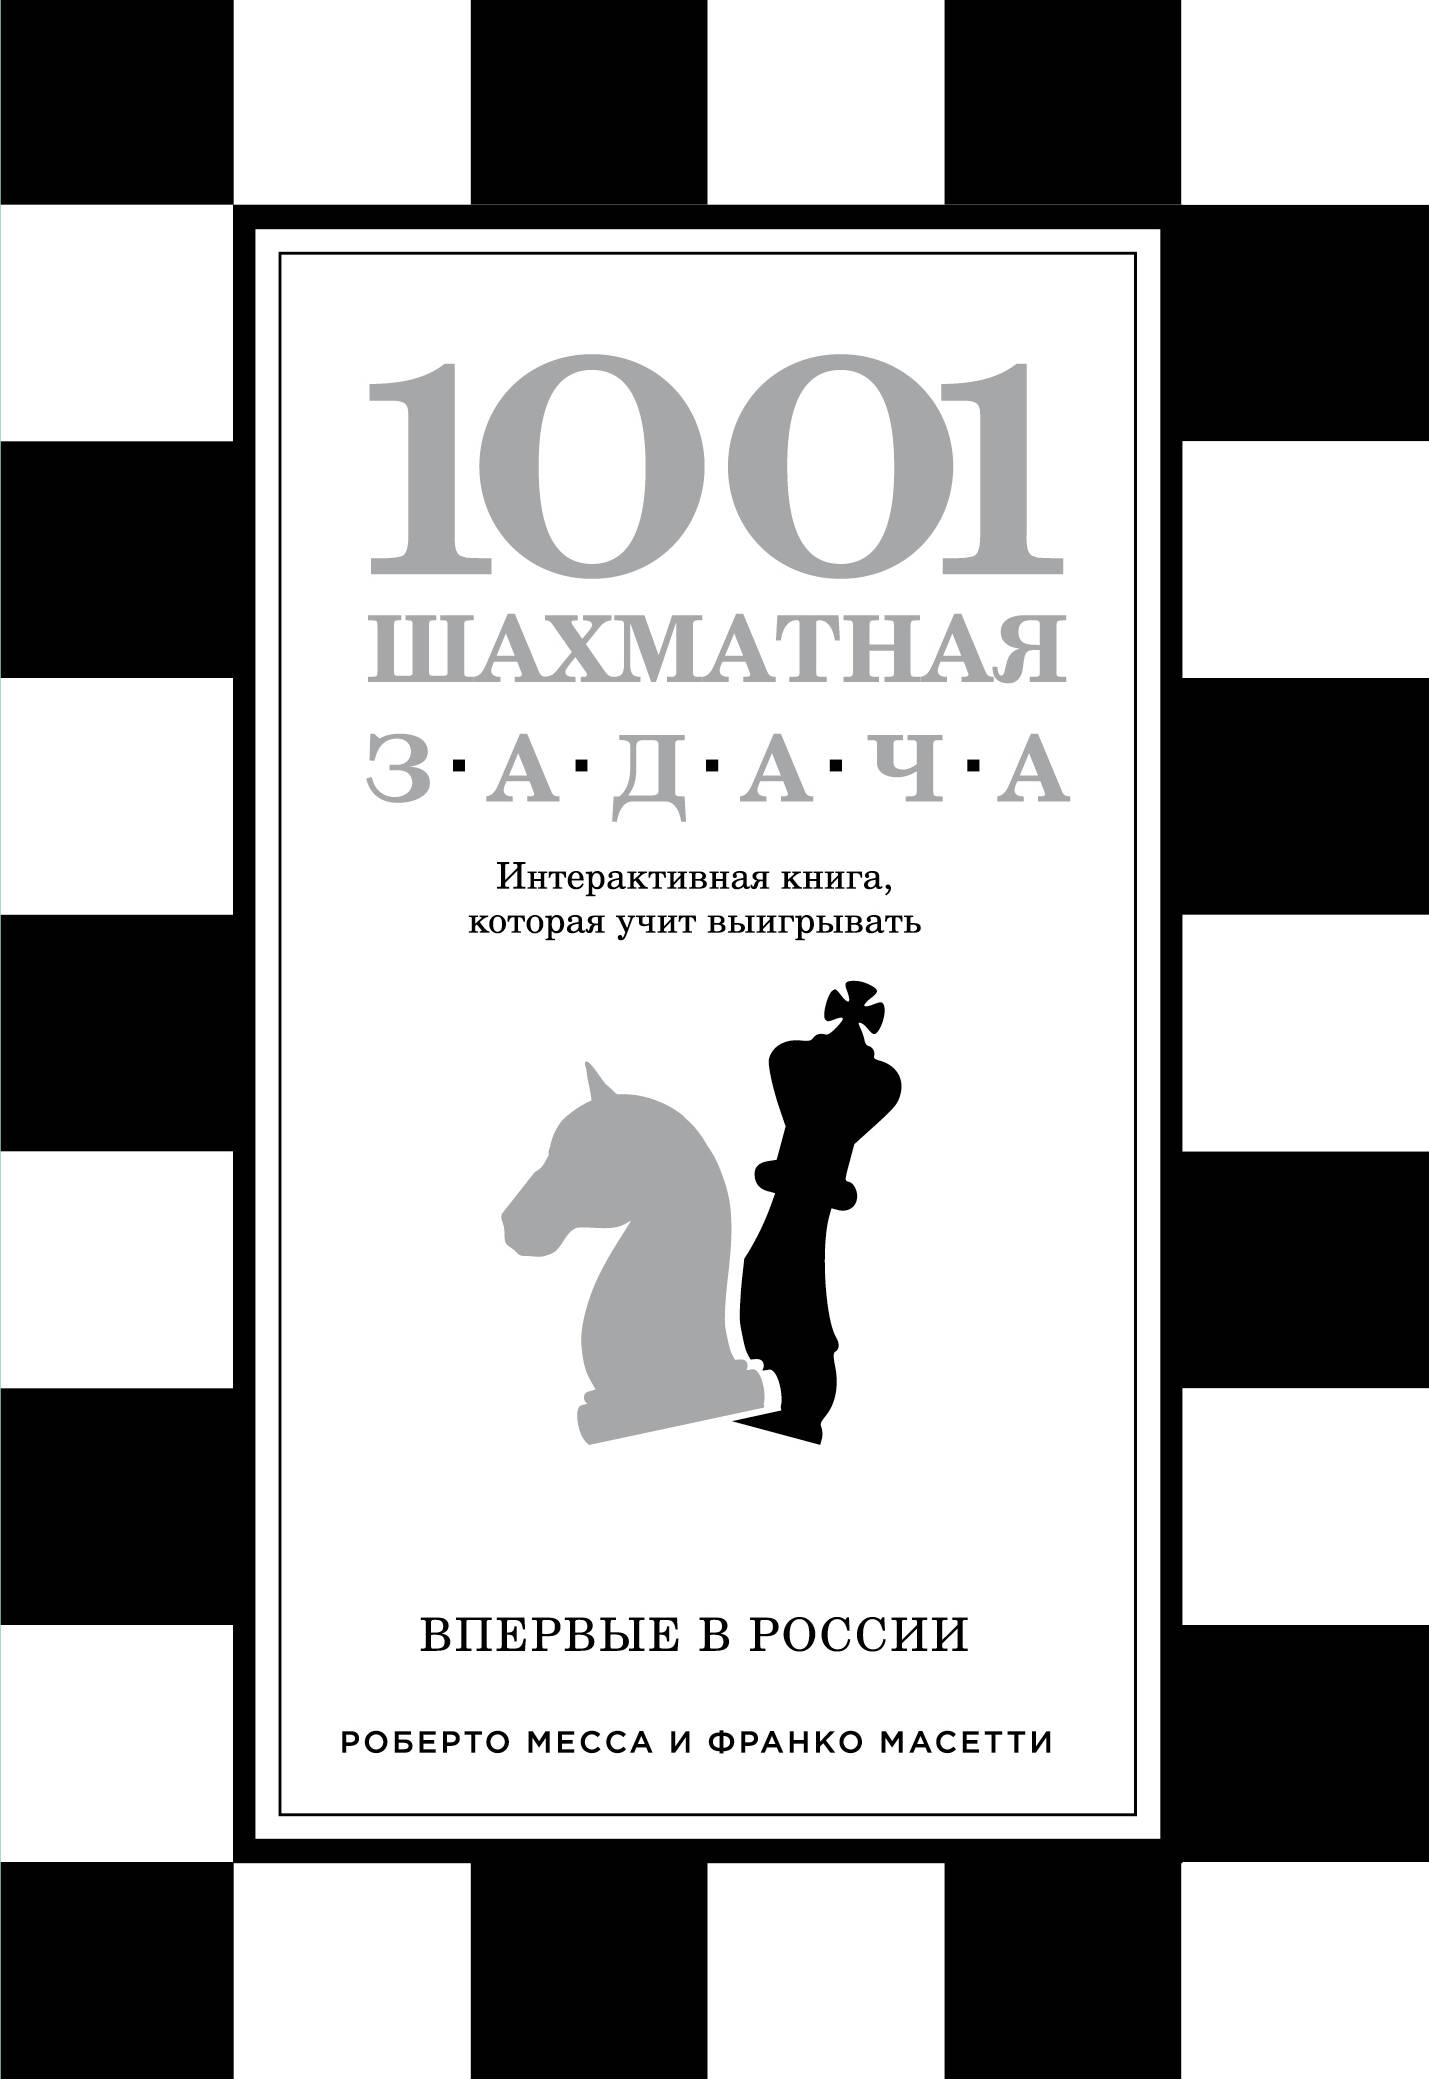 Ионов В.Э. 1001 шахматная задача. Интерактивная книга, которая учит выигрывать